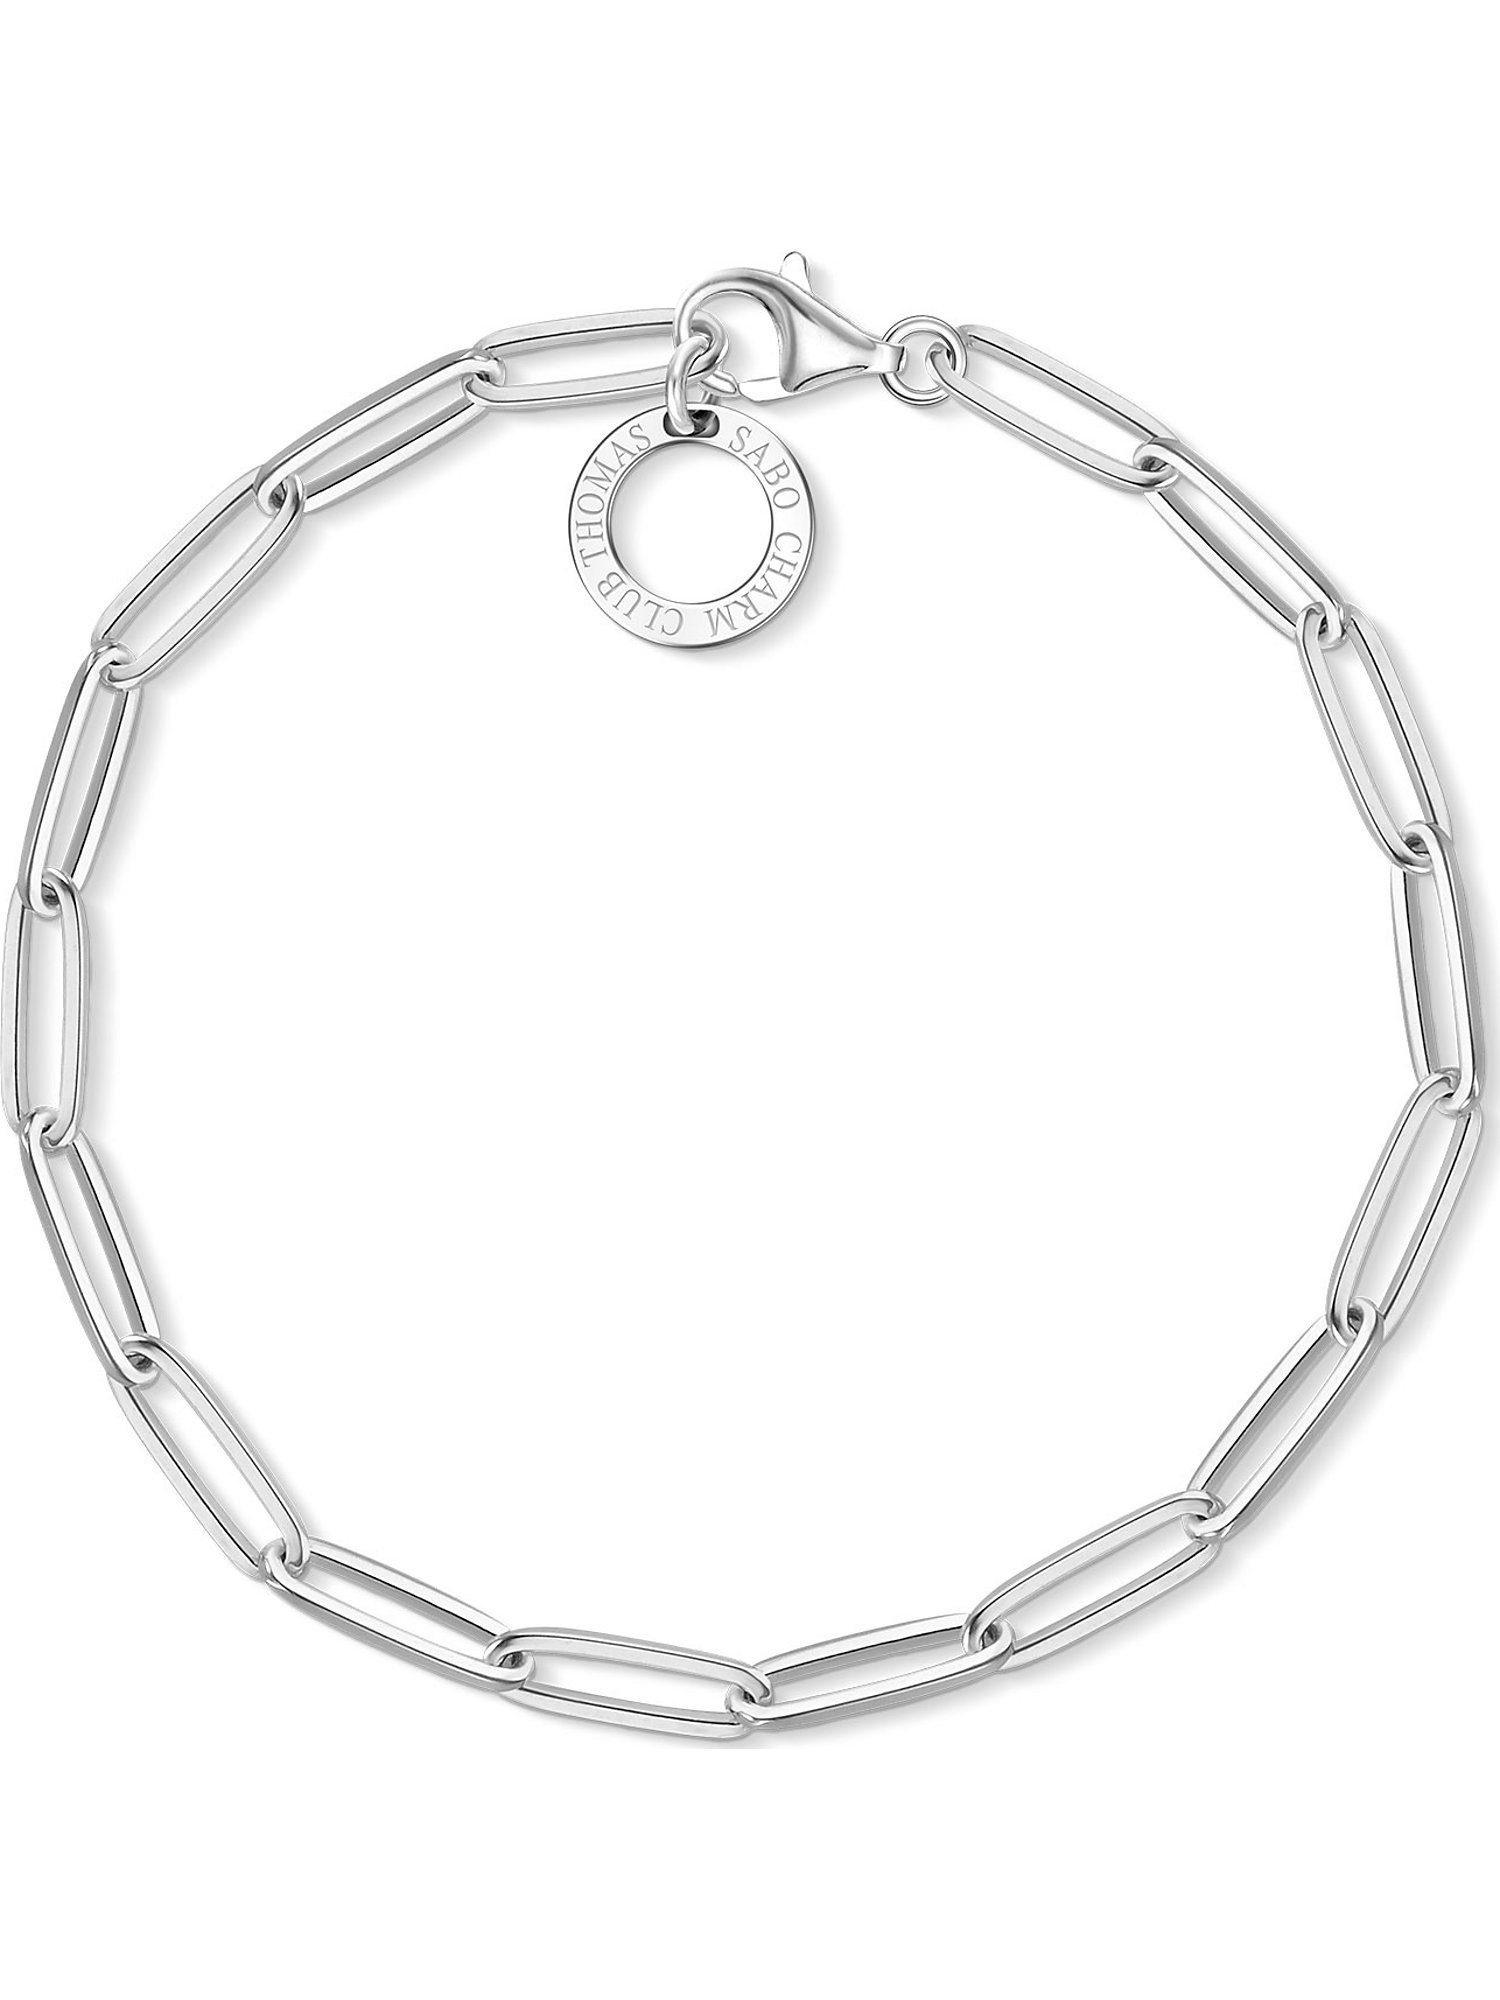 THOMAS SABO Silberarmband »Thomas Sabo Damen-Armband 925er Silber«, Modern  online kaufen | OTTO